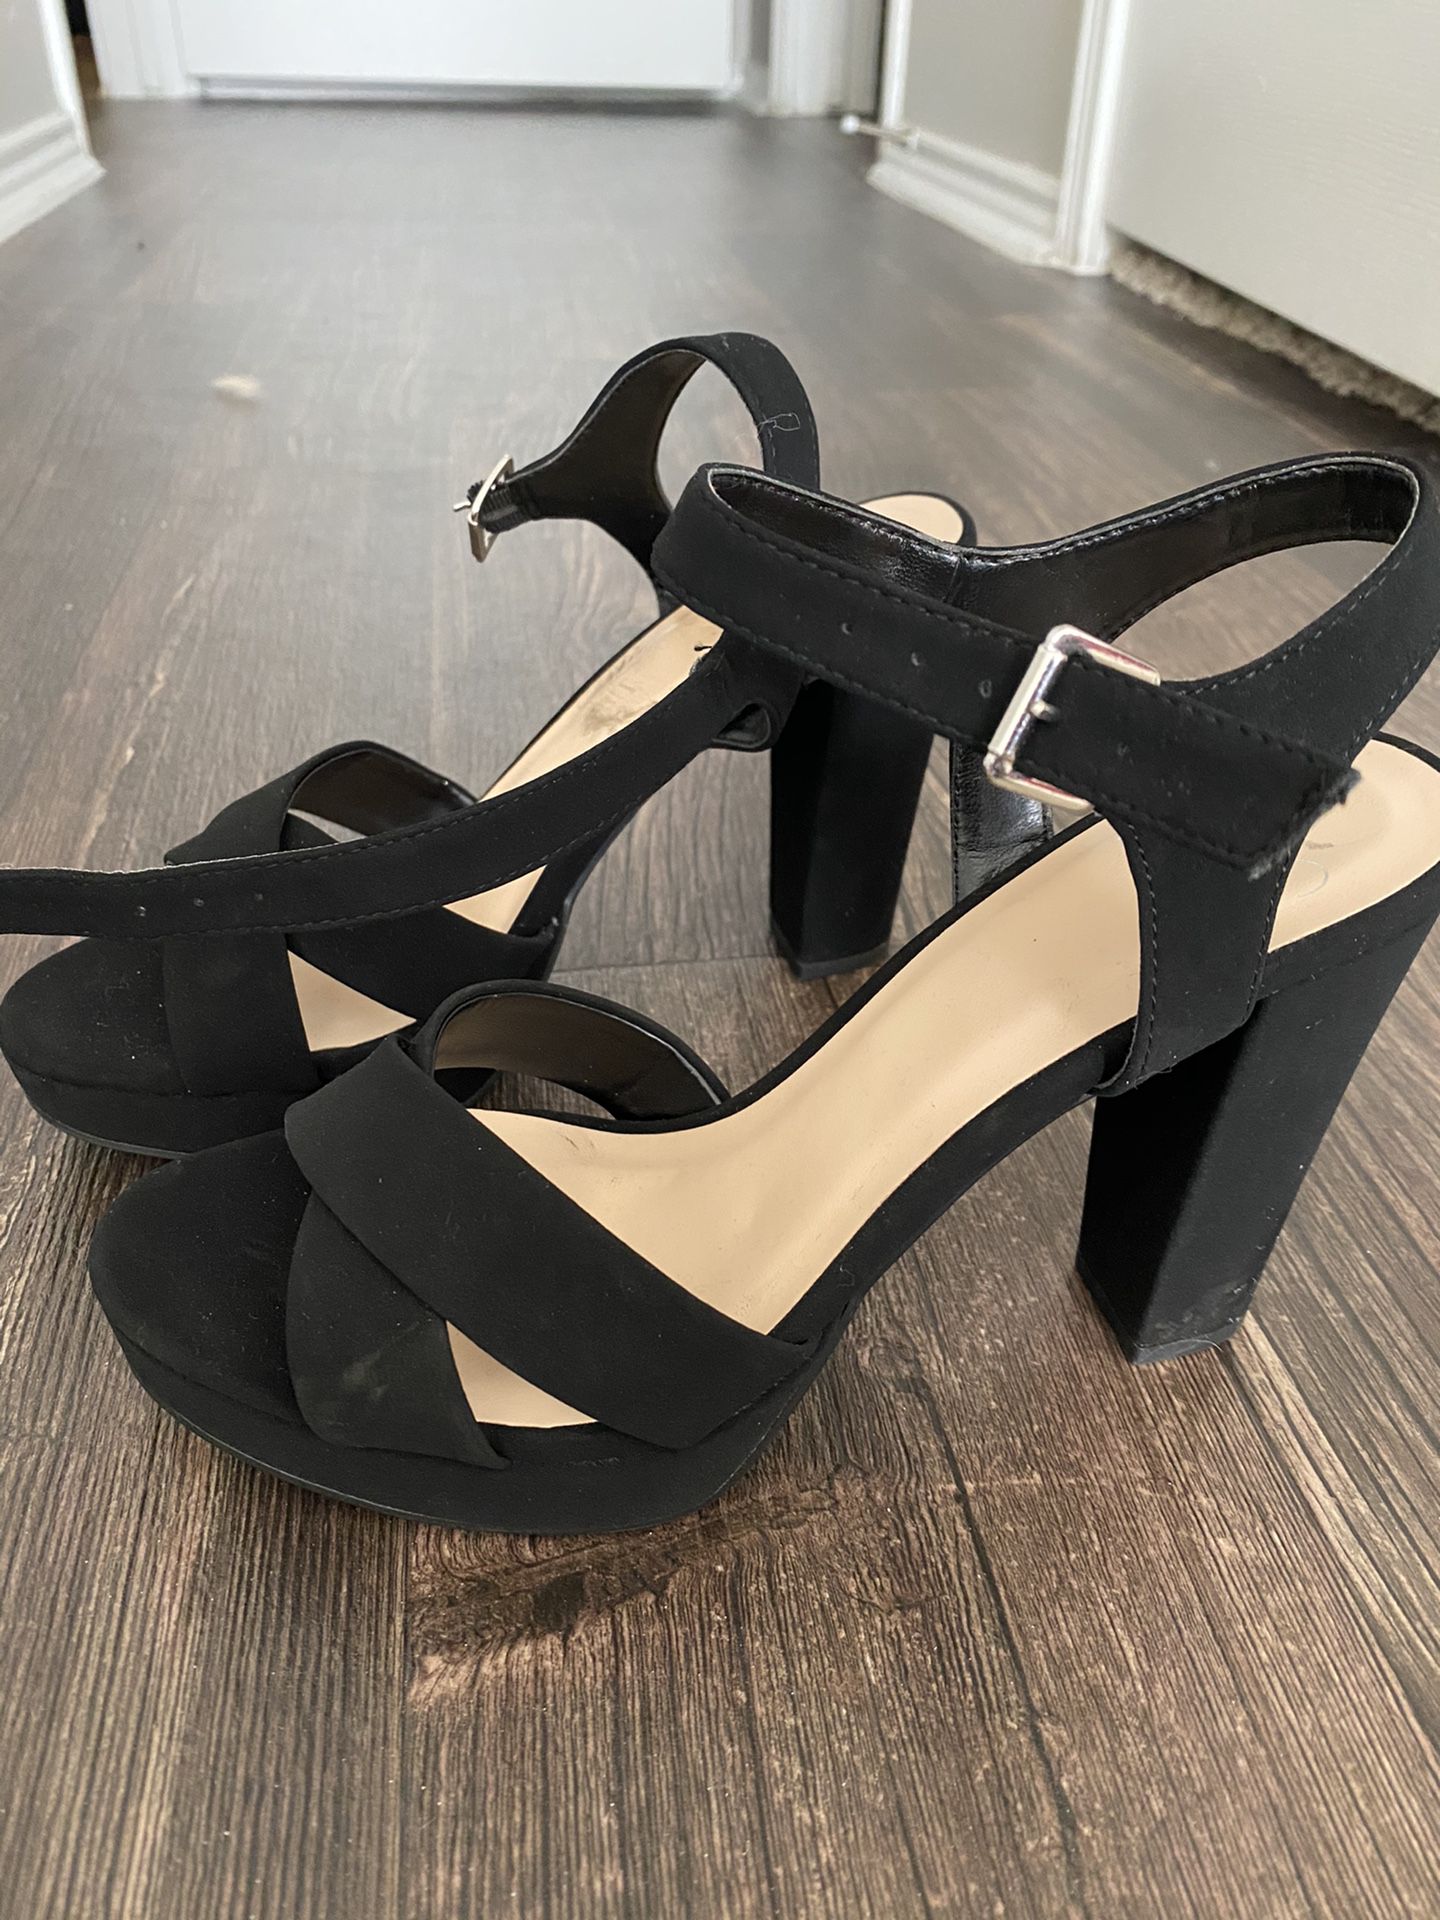 Black High Heeled Dress Shoes